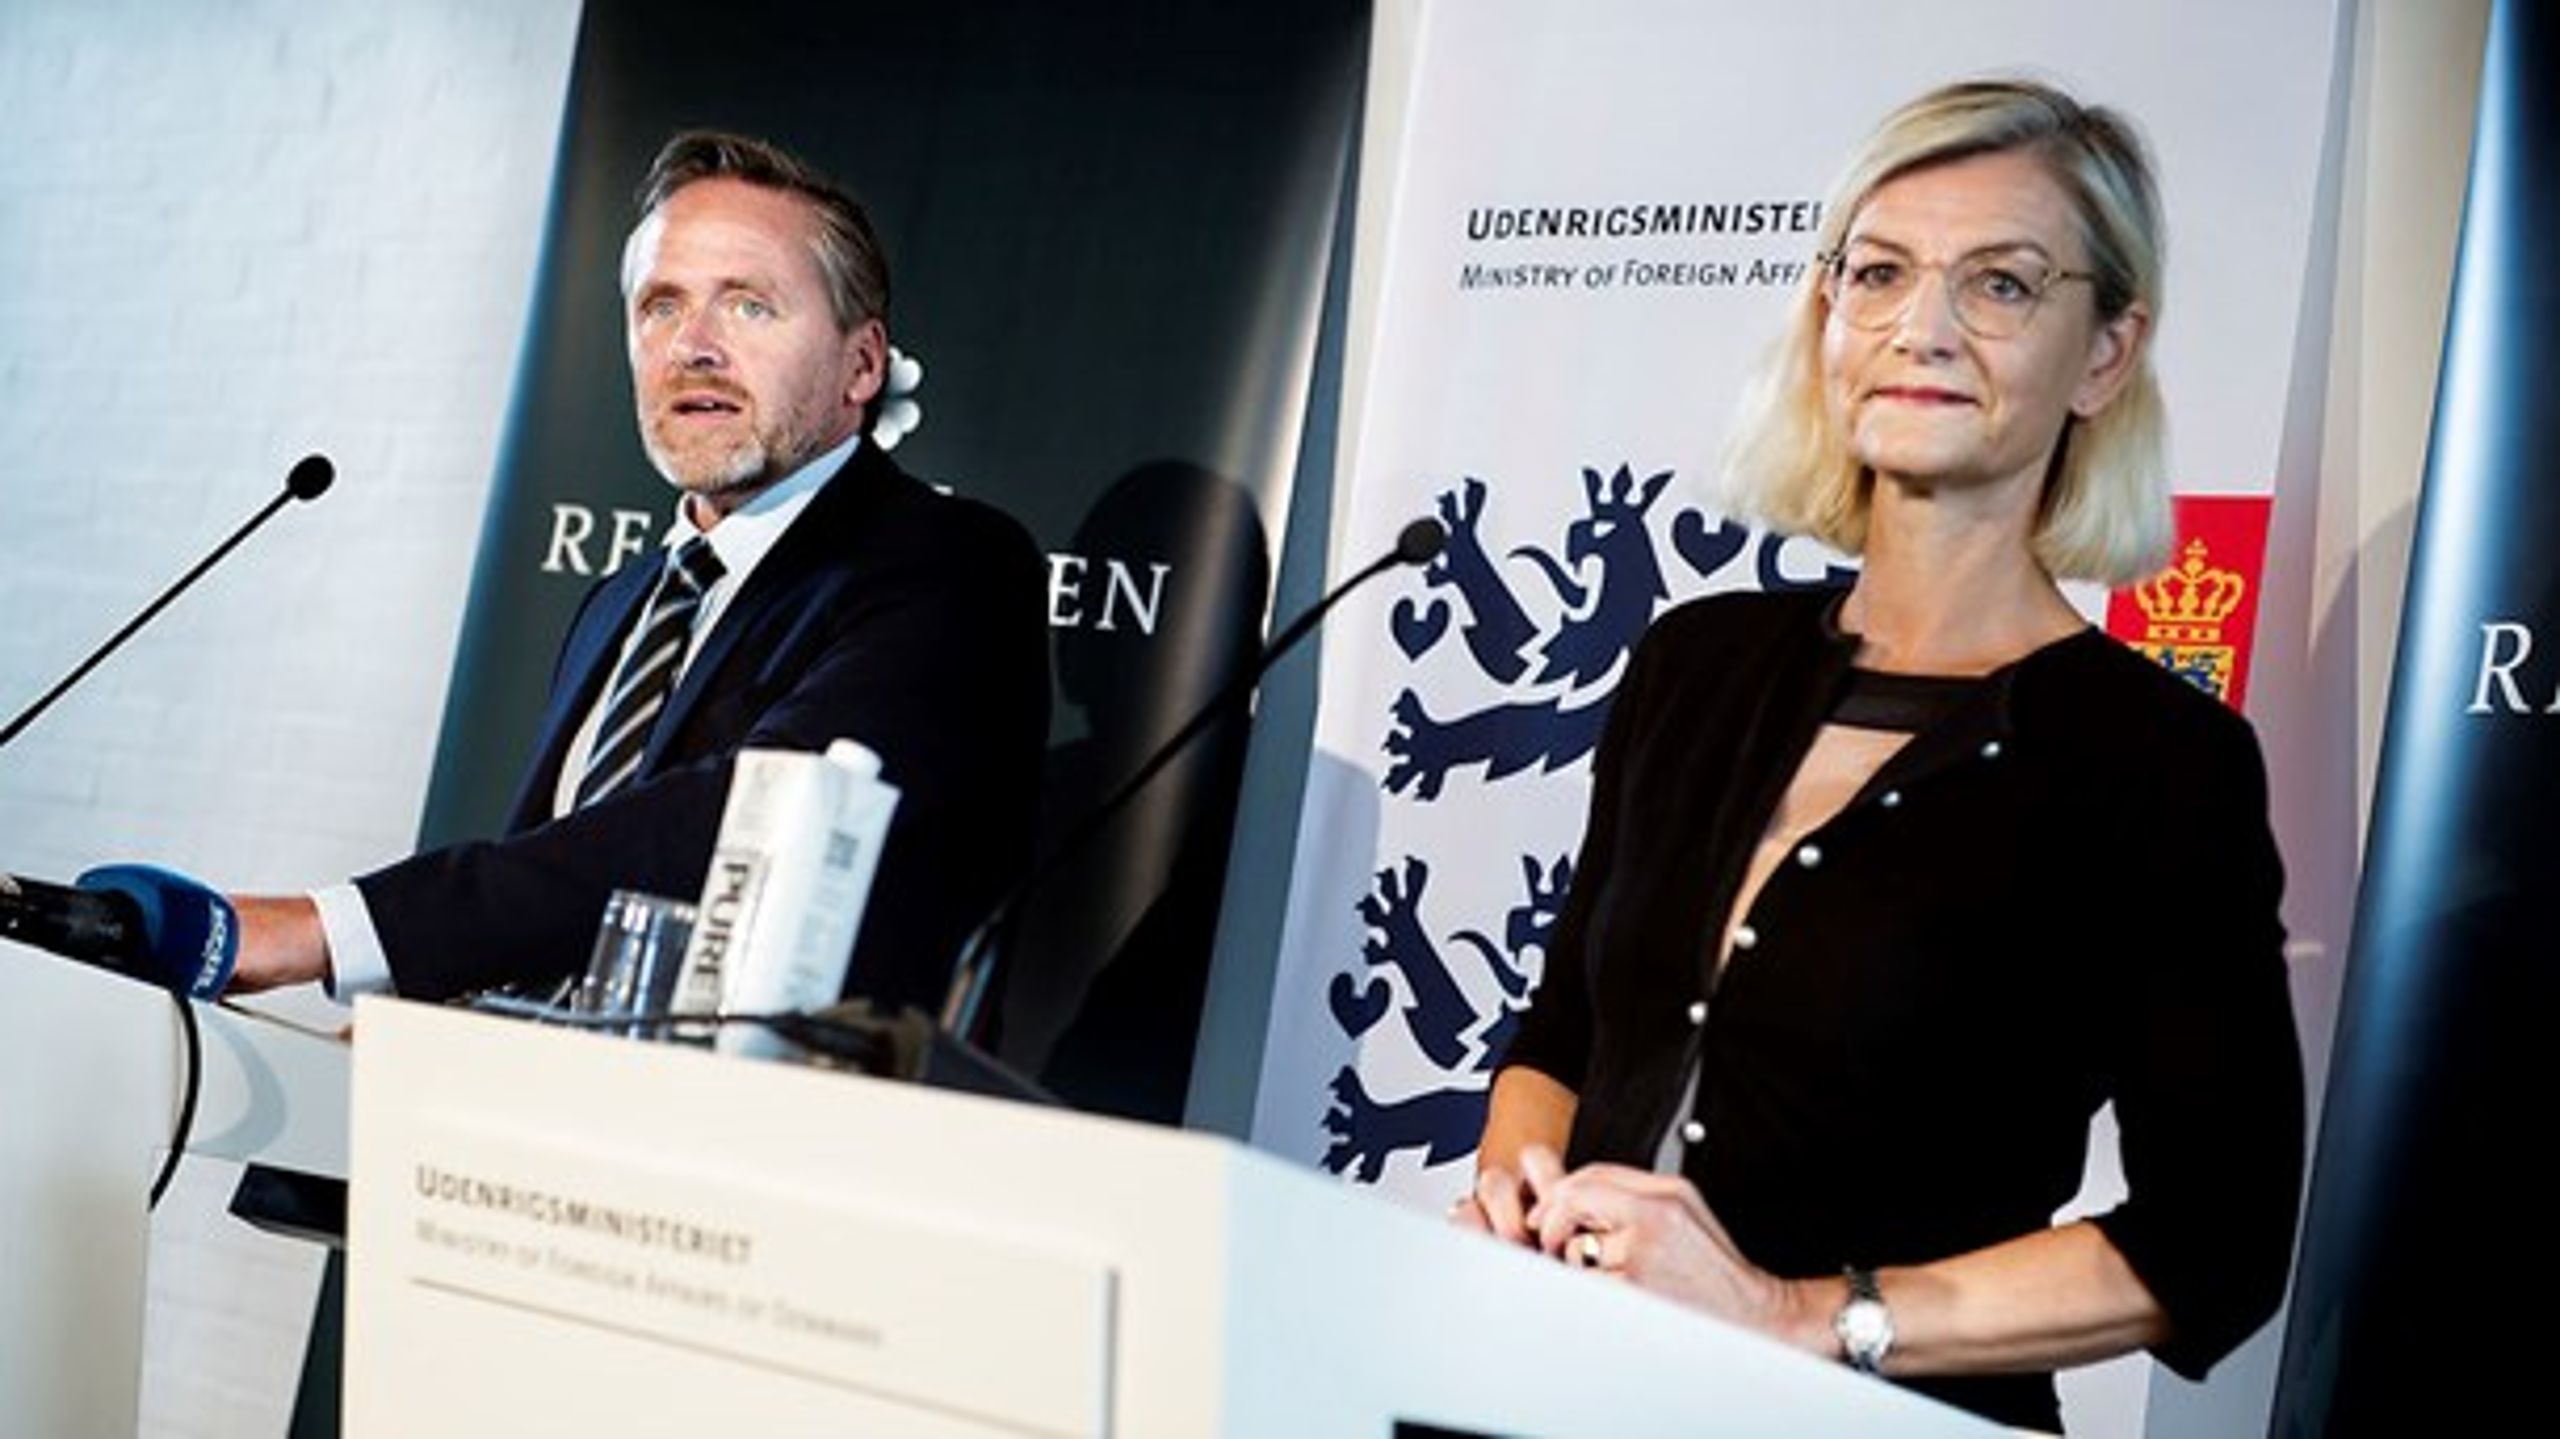 Udenrigsminister Anders Samuelsen (LA) og udviklingsminister Ulla Tørnæs (V) præsenterede onsdag&nbsp;regeringens nye udenrigspolitiske strategi.